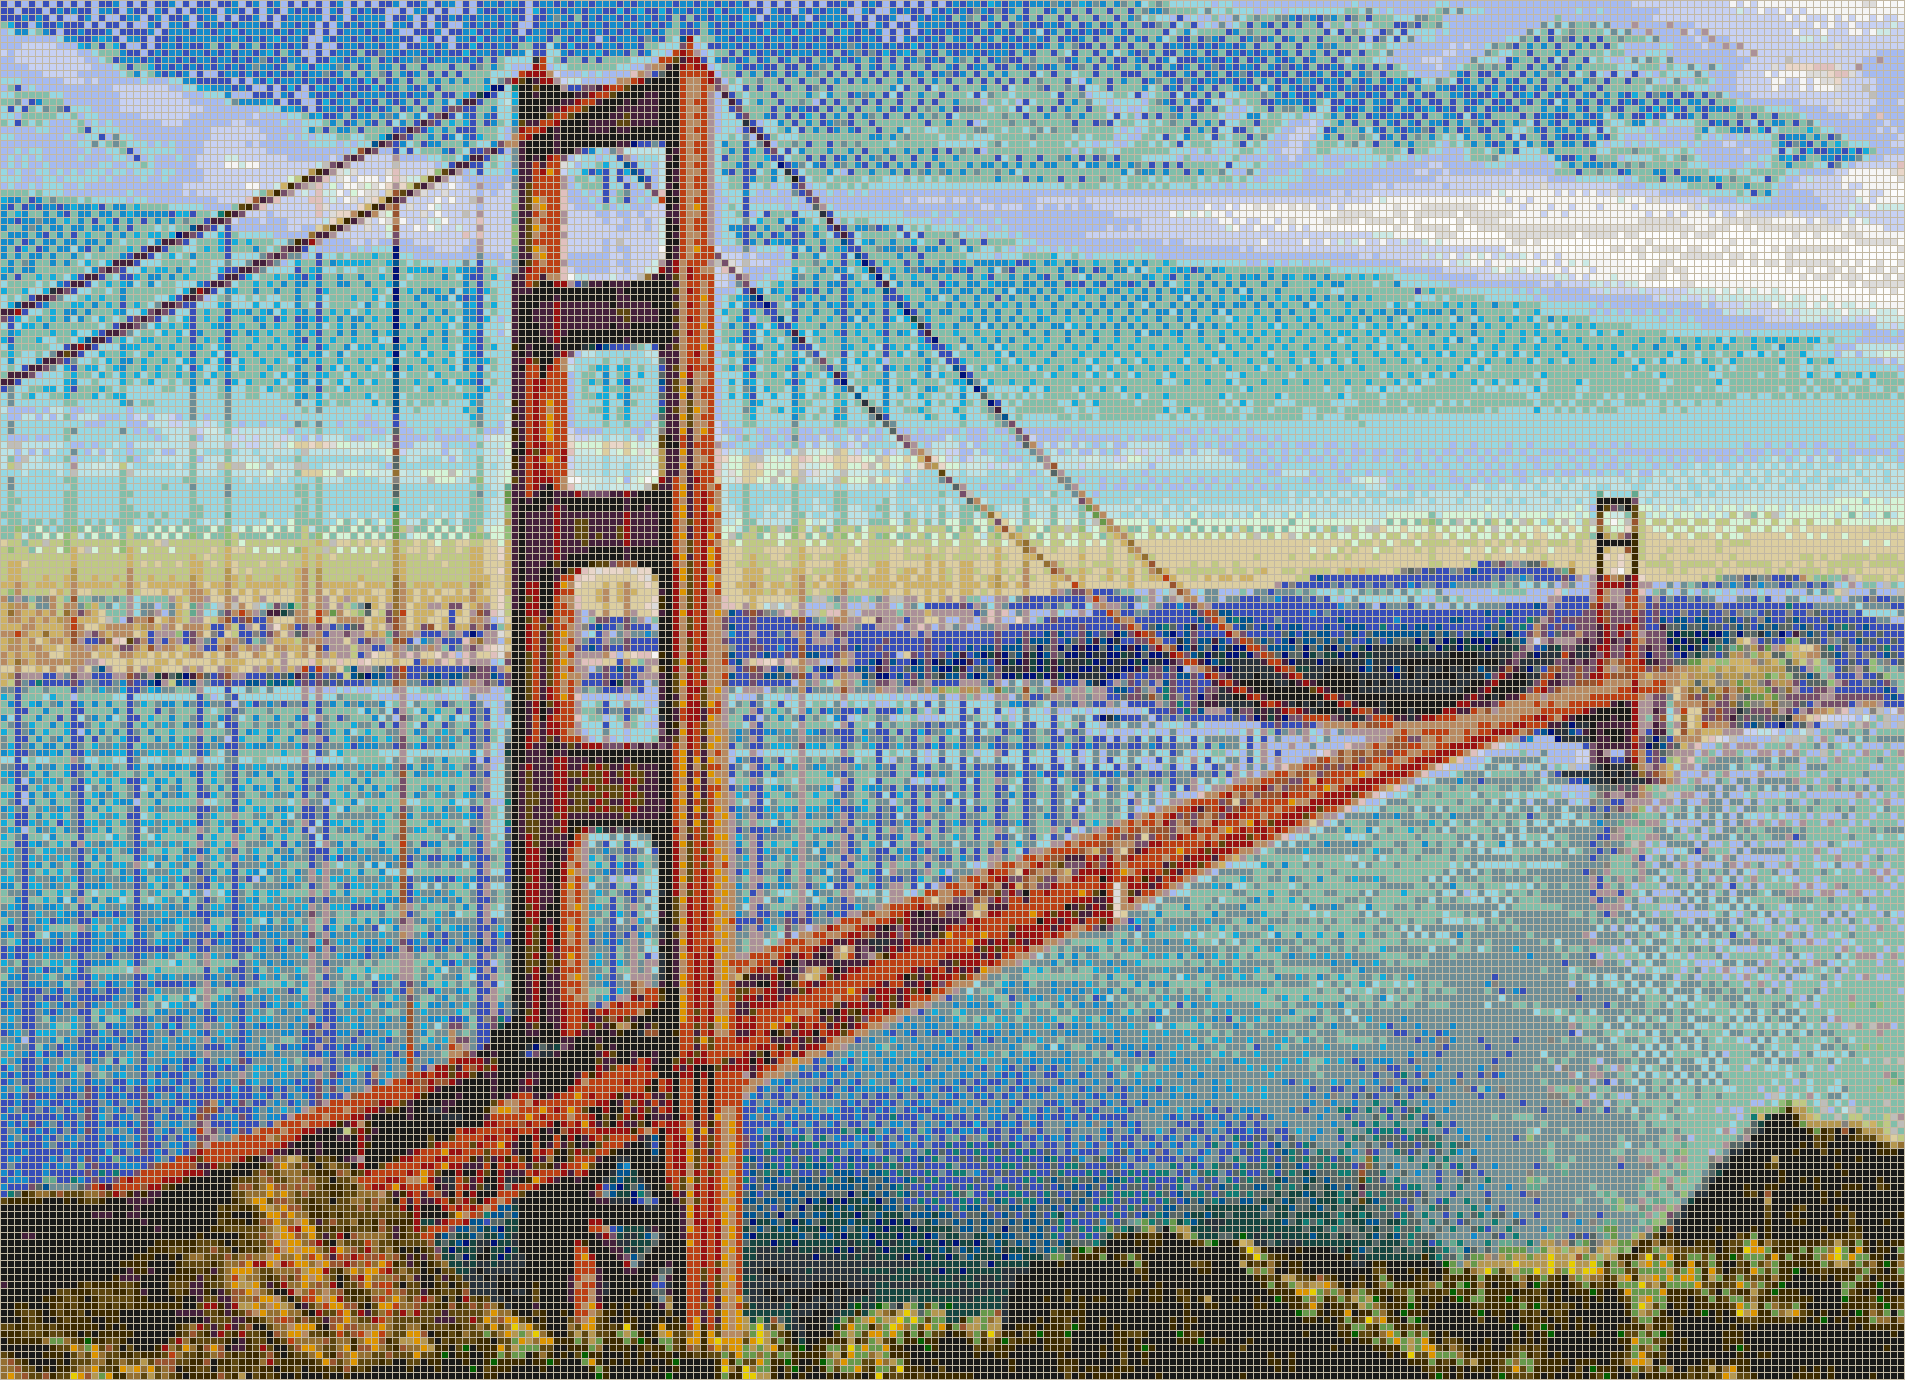 Golden Gate Bridge from Marin Headlands - Mosaic Tile Art